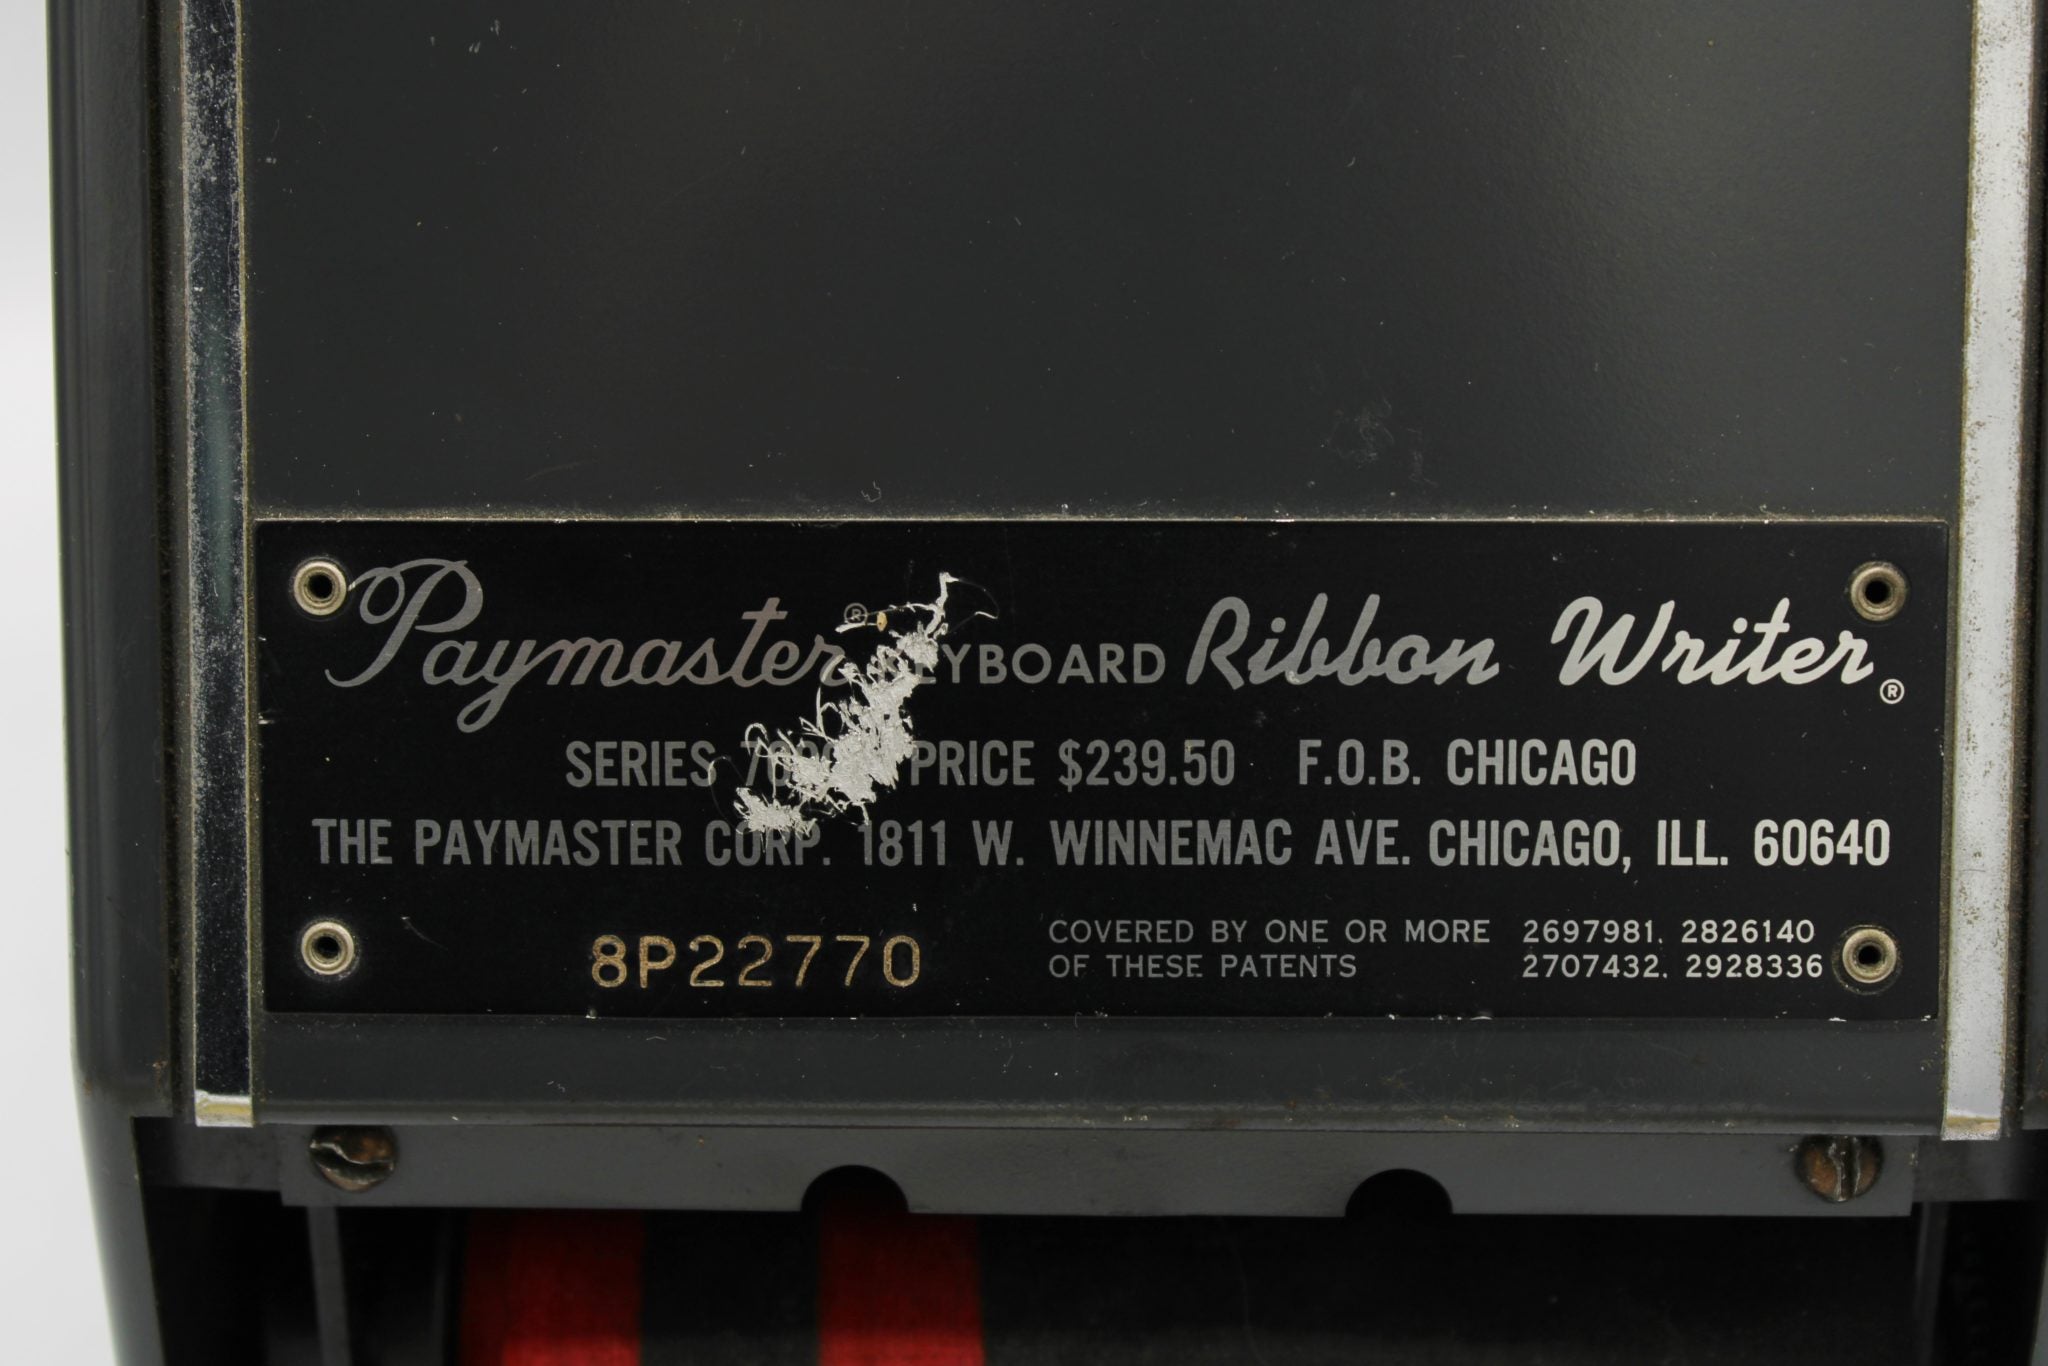 Paymaster Keyboard Series 7000 Ribbon Writer